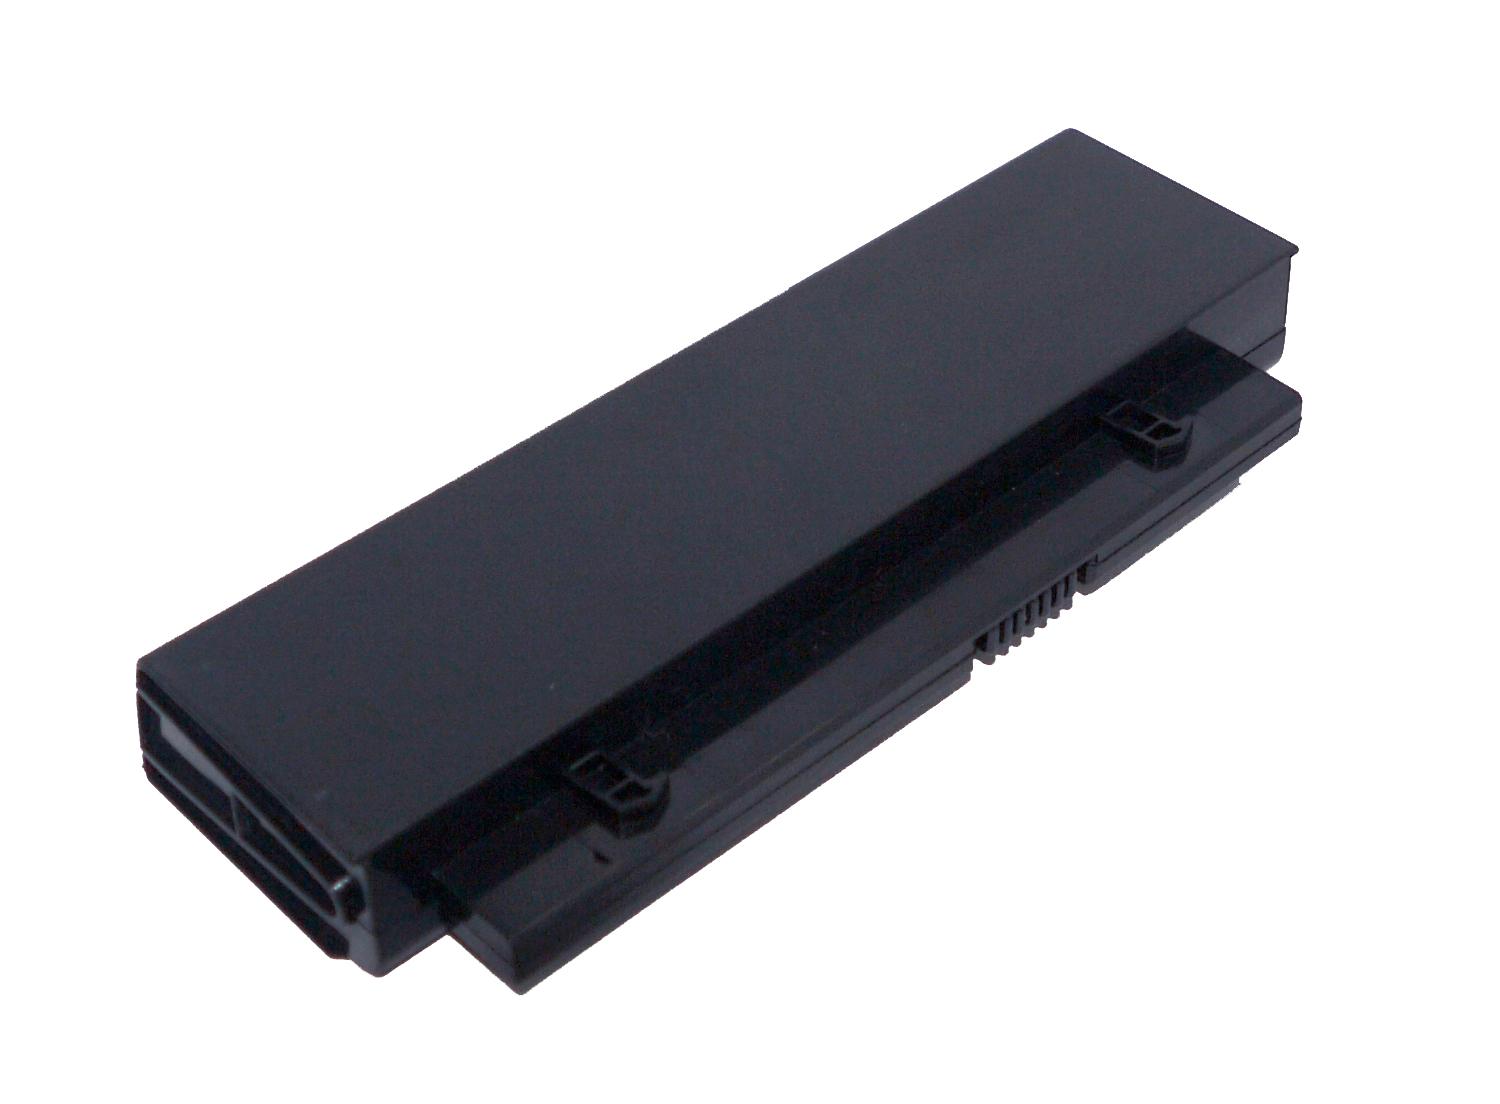 HSTNN-DB91, HSTNN-OB91 replacement Laptop Battery for HP ProBook 4210s, ProBook 4310s, 2200mAh, 14.40V